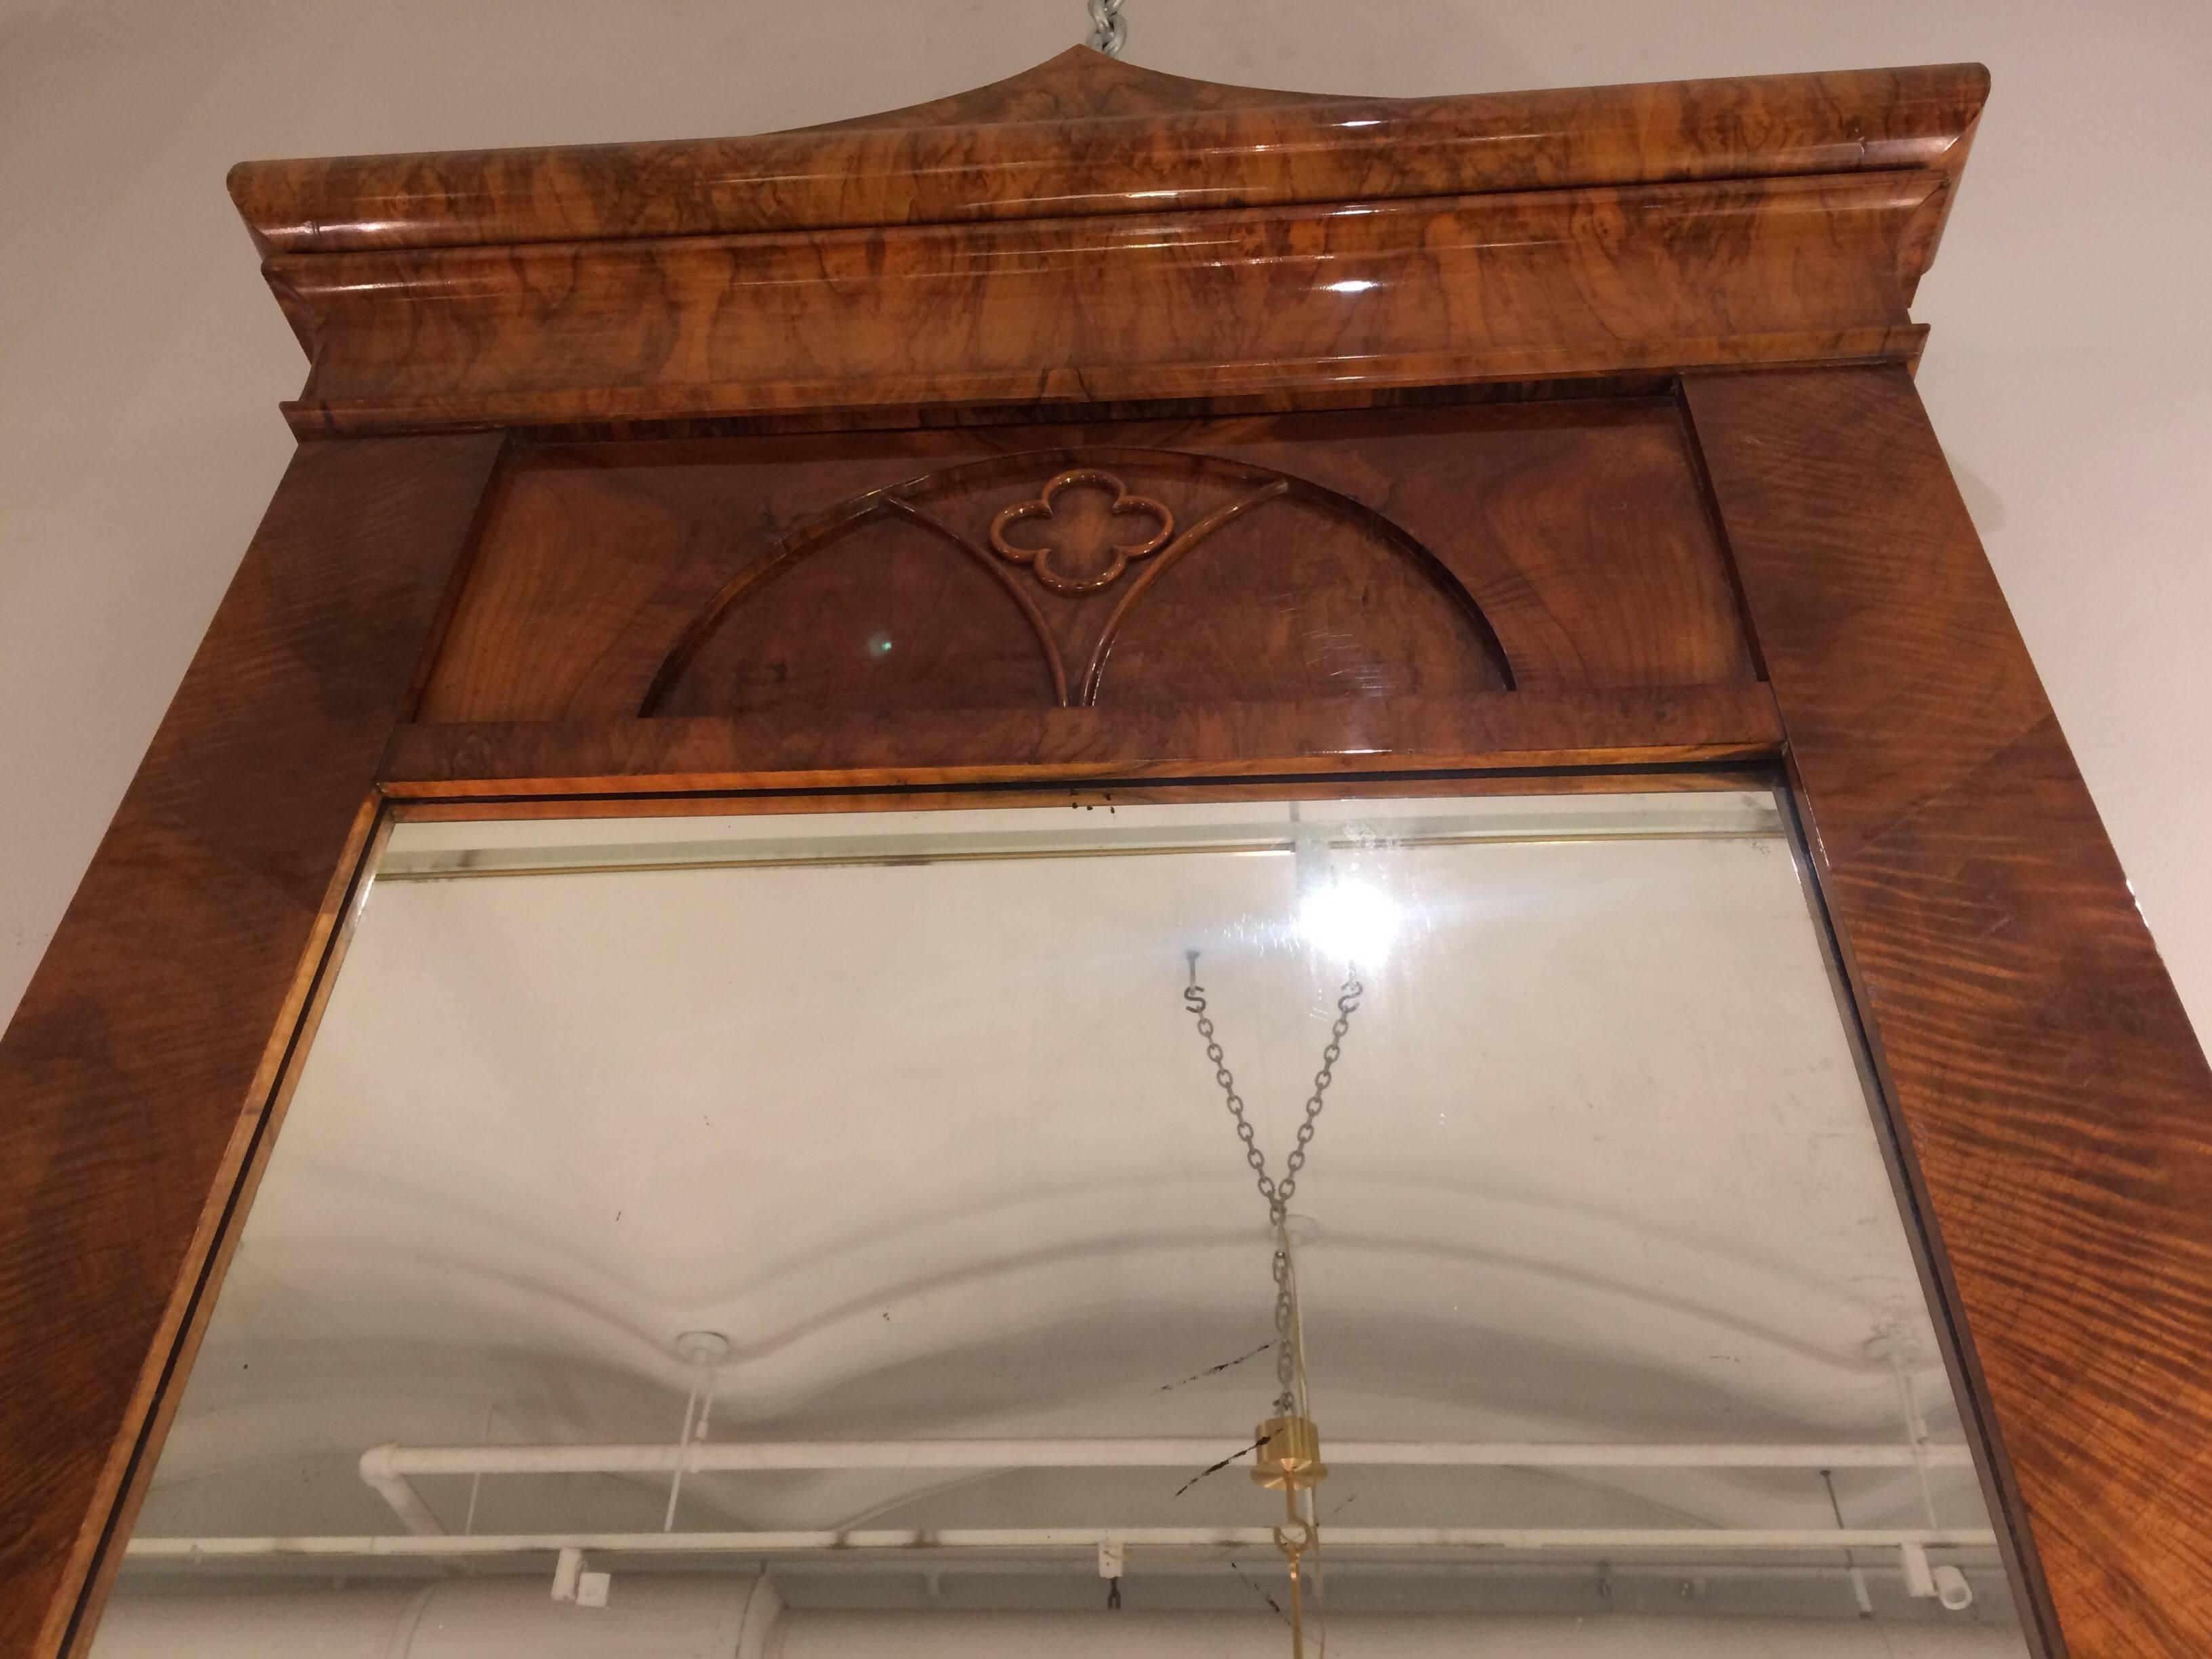 Ein hervorragender Biedermeier-Spiegel aus Nussbaumholz von beeindruckender Größe aus Österreich um 1820. Die einzigartige pagodenförmige Krone überragt einen Innenbogen, der ein erhabenes vierlappiges Medaillon einschließt. Gefertigt aus stark